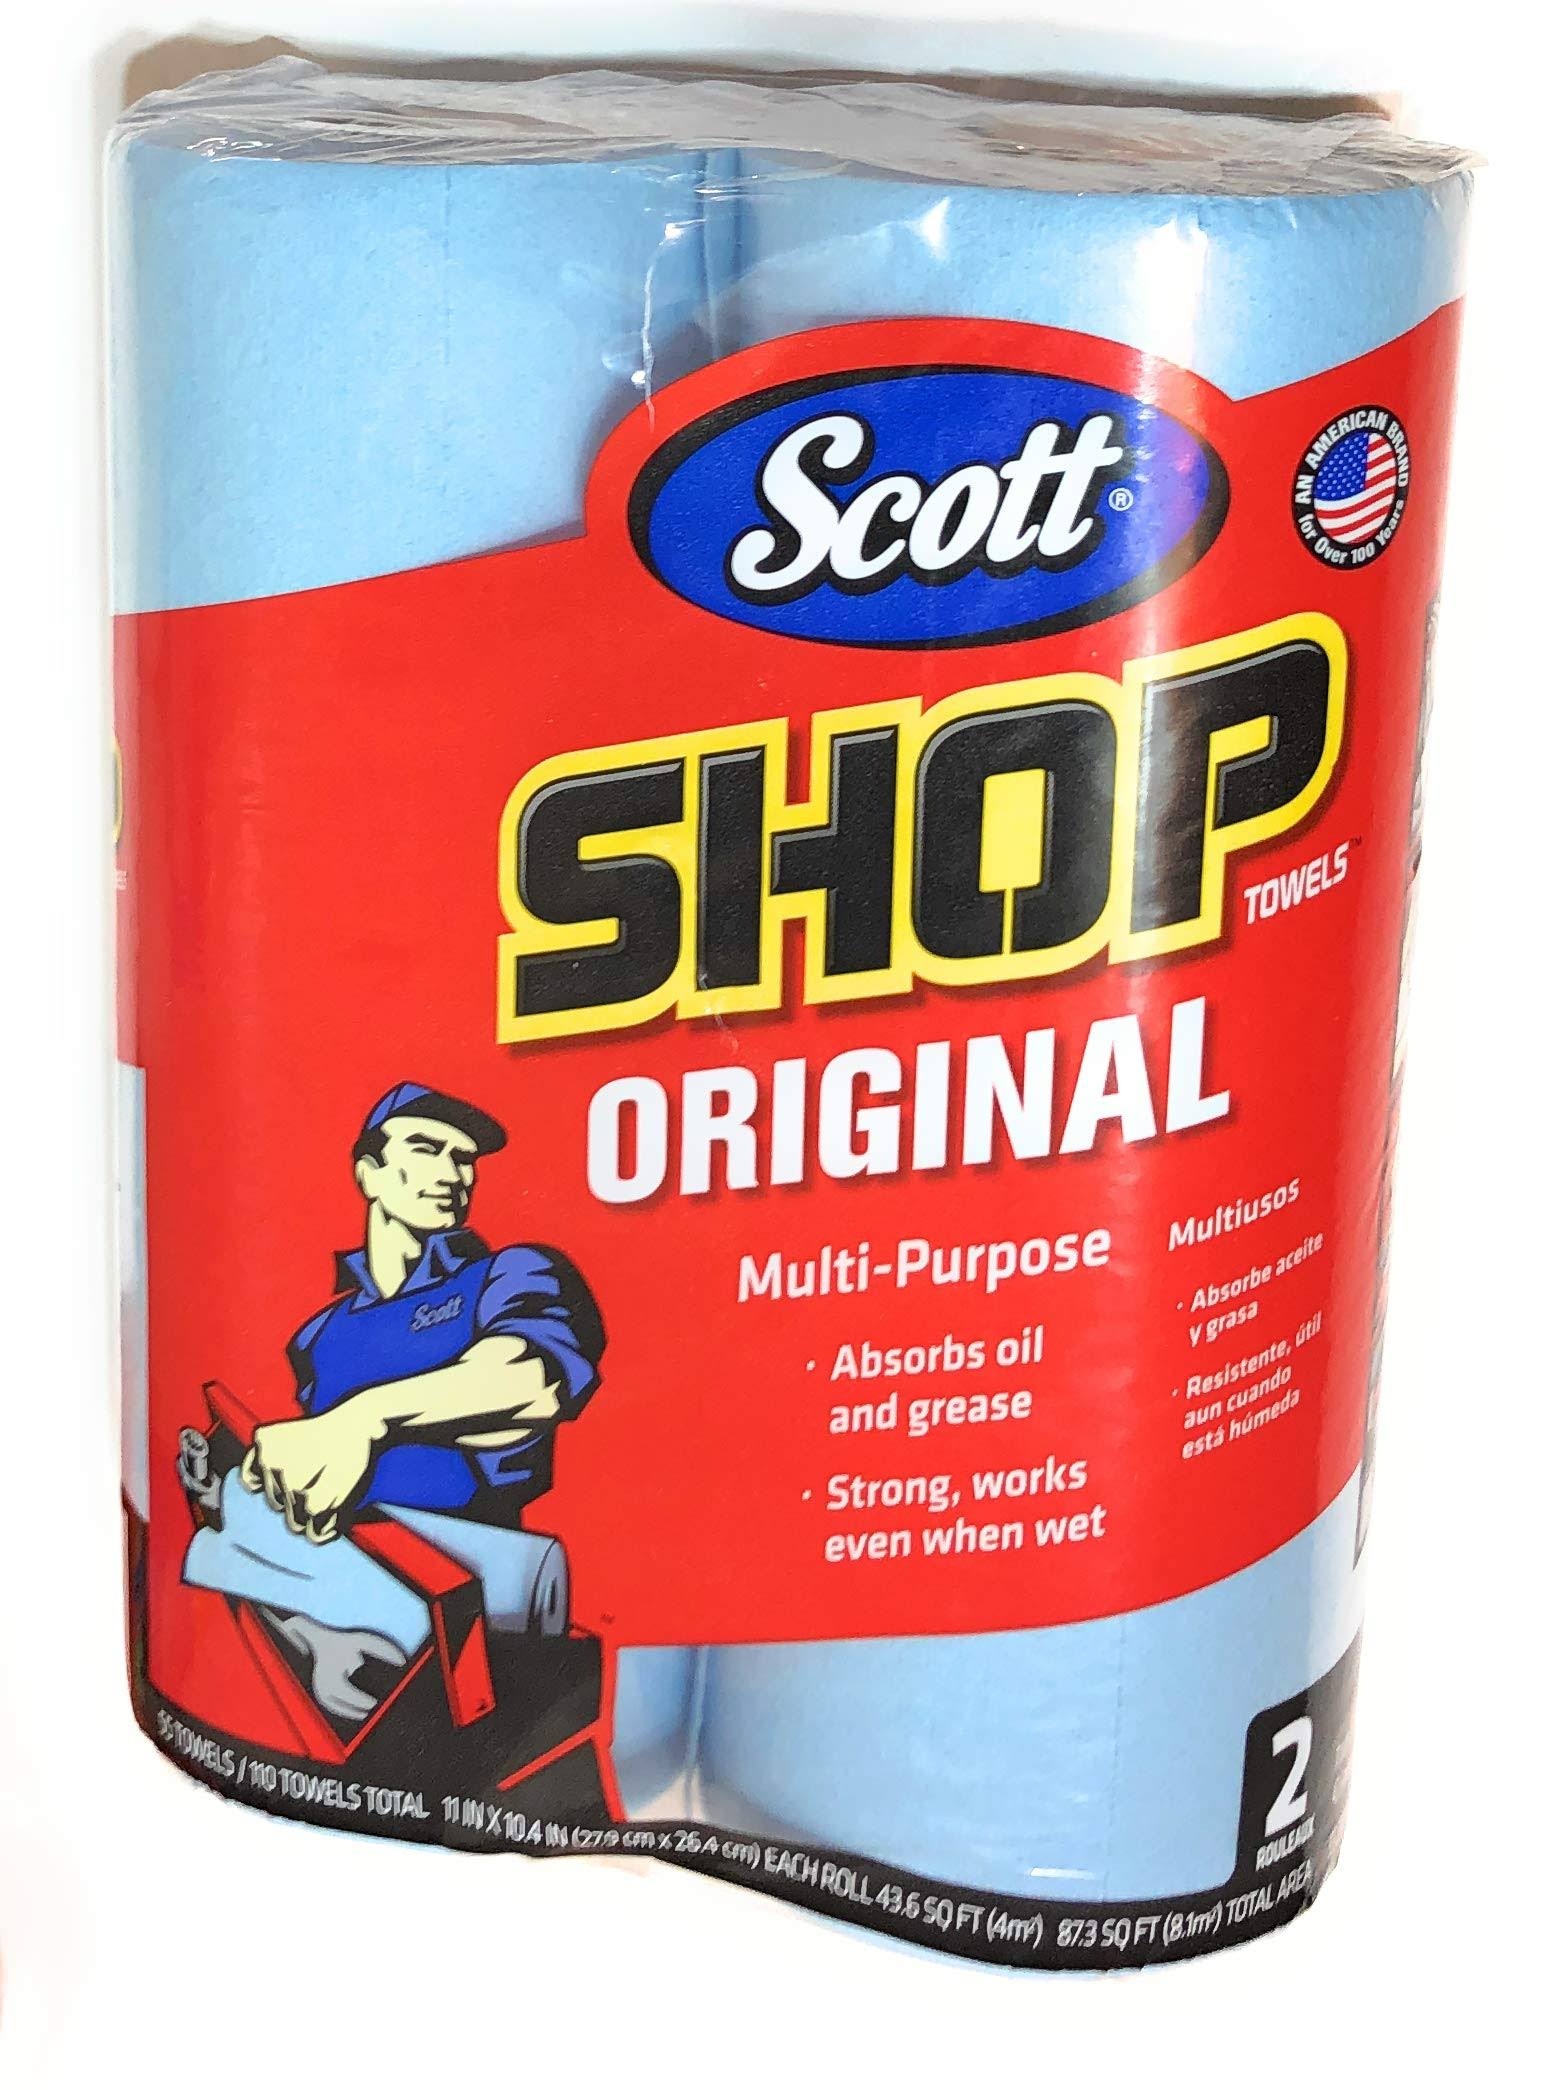 Scott Shop Towels - 2 Pack